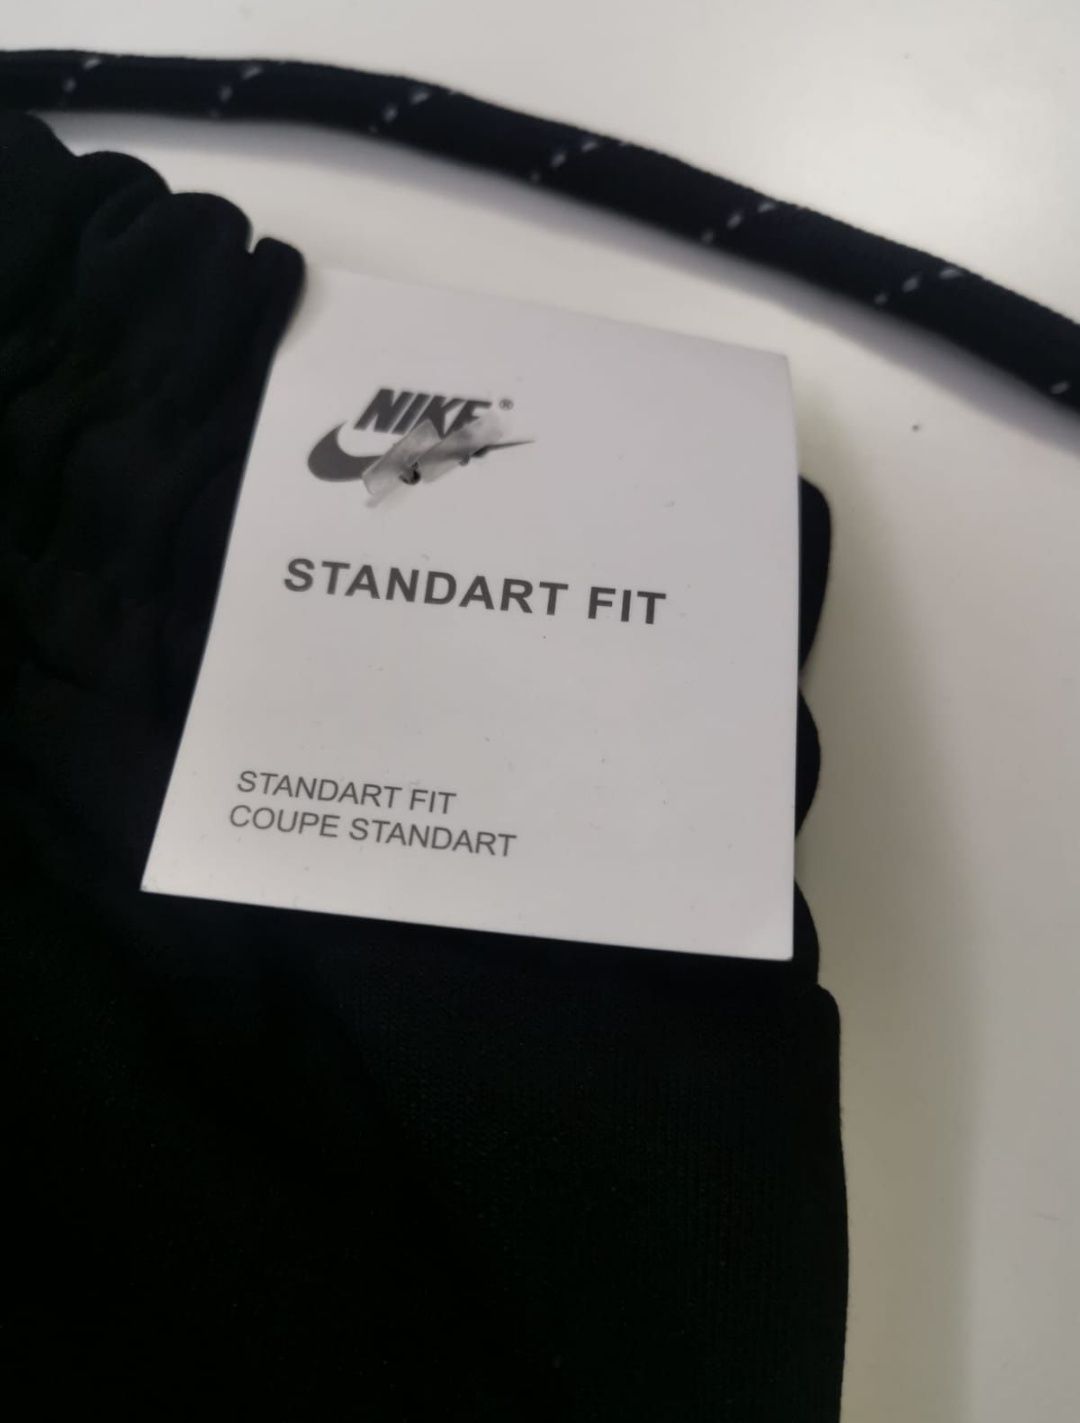 Vănd Nike tech are toate detaliile originalului